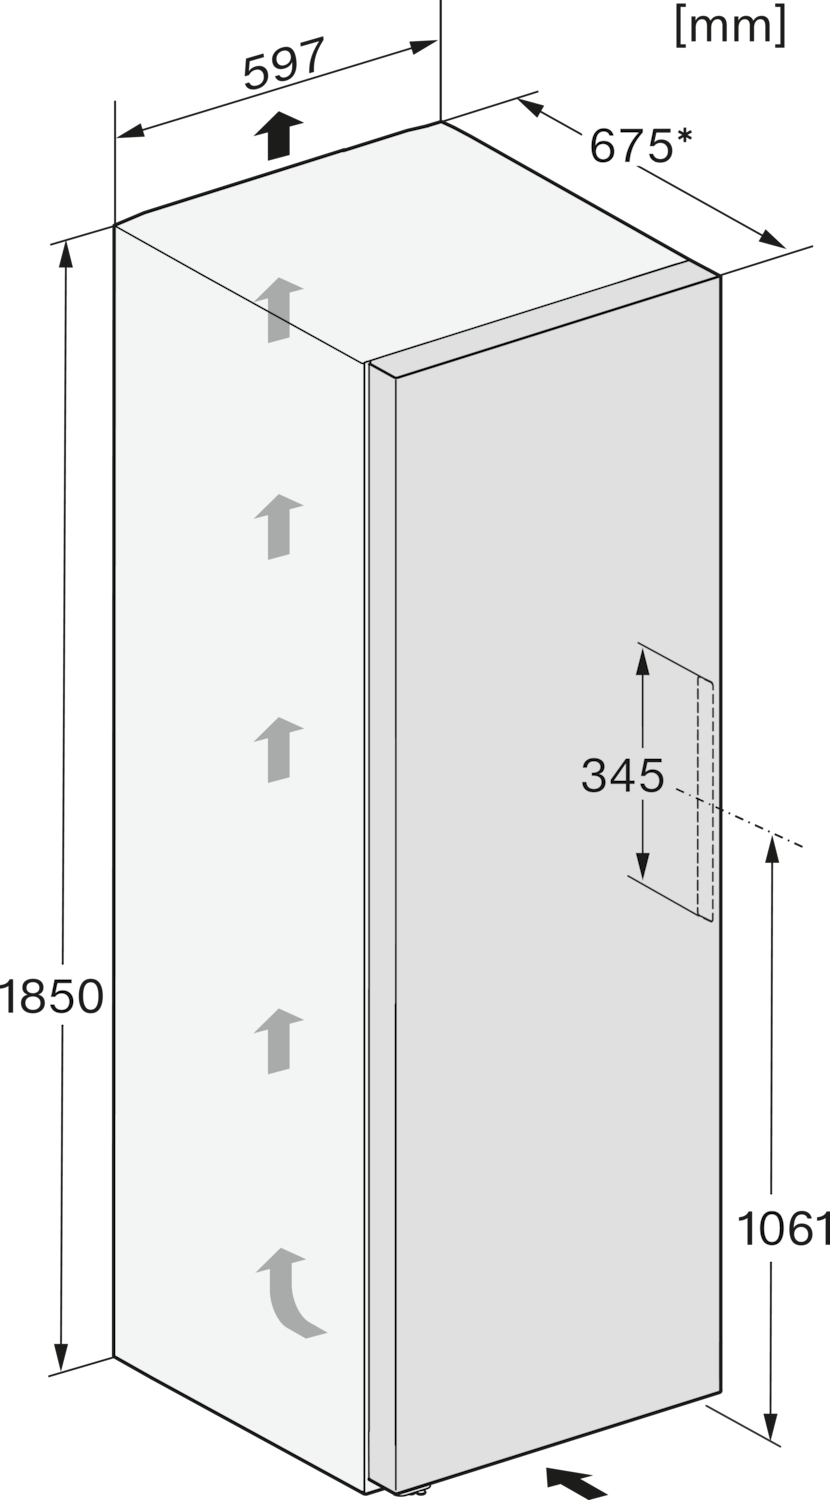 Saldētava ar NoFrost un Side Open funkcijām, 1.85m augstums (FNS 4382 E) product photo View4 ZOOM